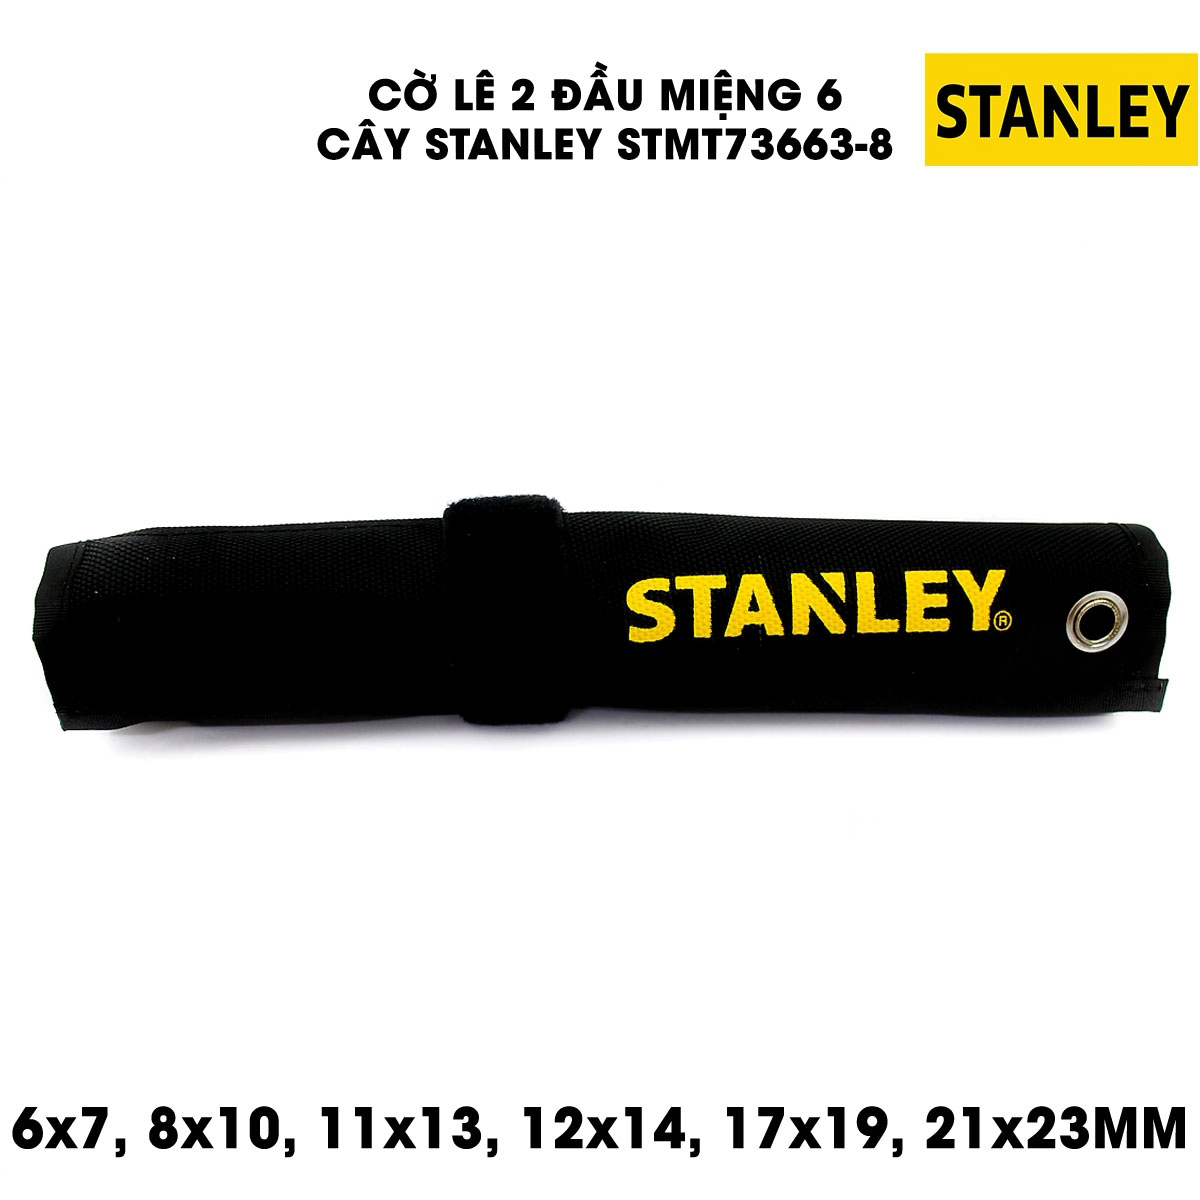 Hình ảnh 3 của mặt hàng Cờ lê vòng miệng bộ 6pc Stanley STMT73663-8